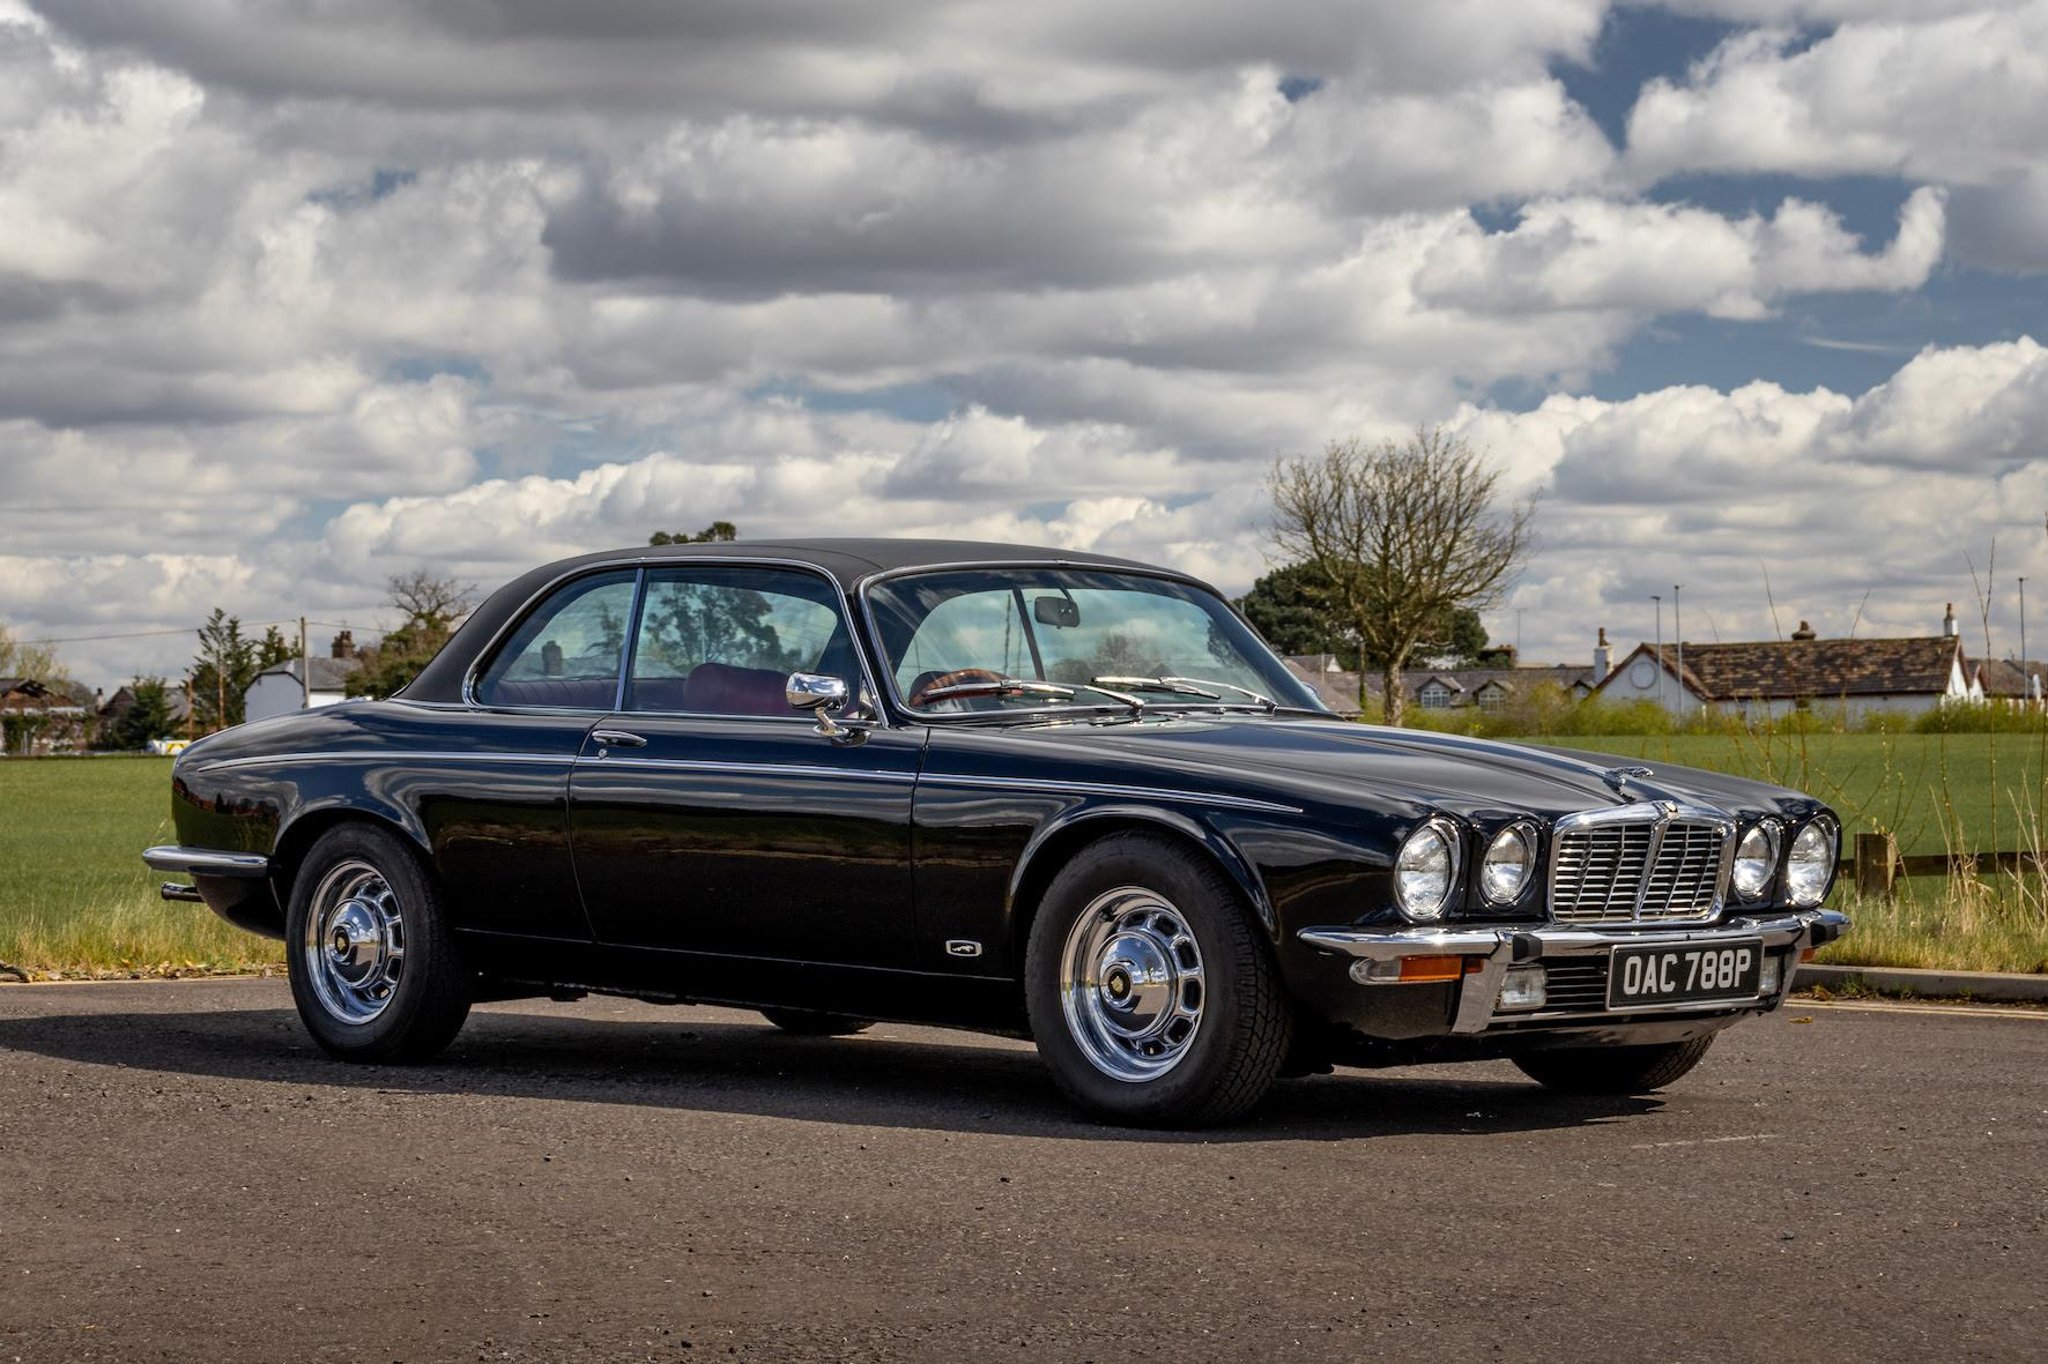 Sheffield classic car collector auctions 1976 Jaguar to raise money for Ukraine appeal